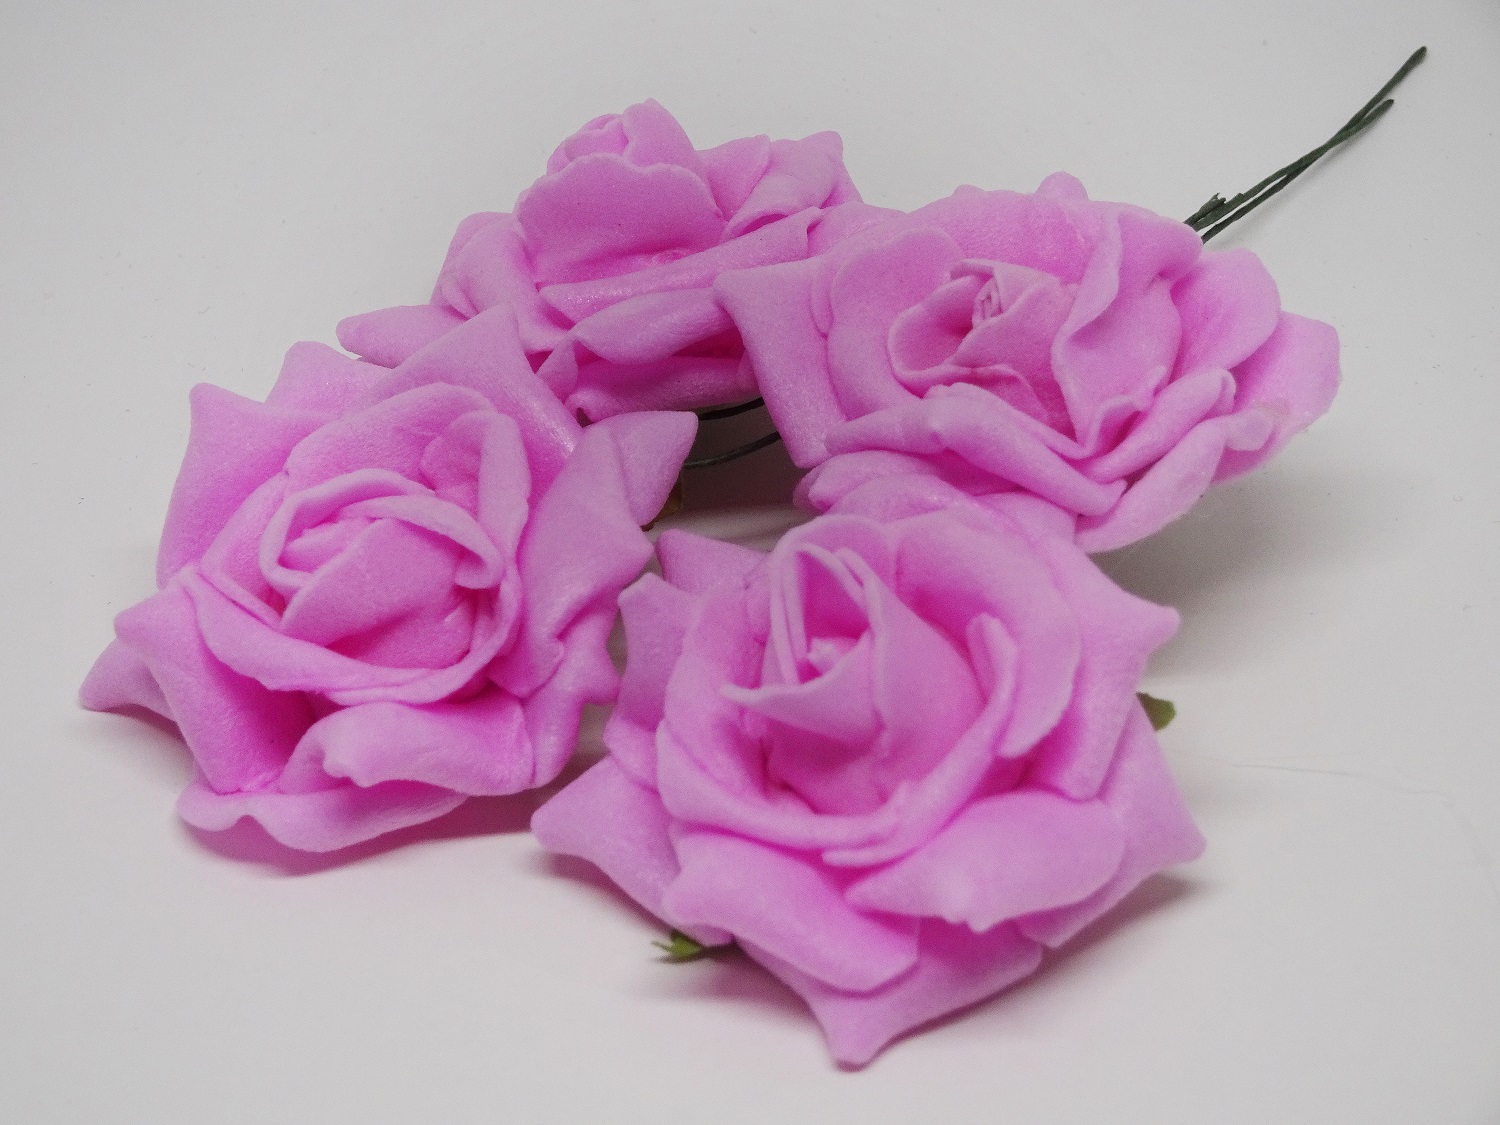  CKF-L-004 Piankowe róże 4cm/4szt -różowe